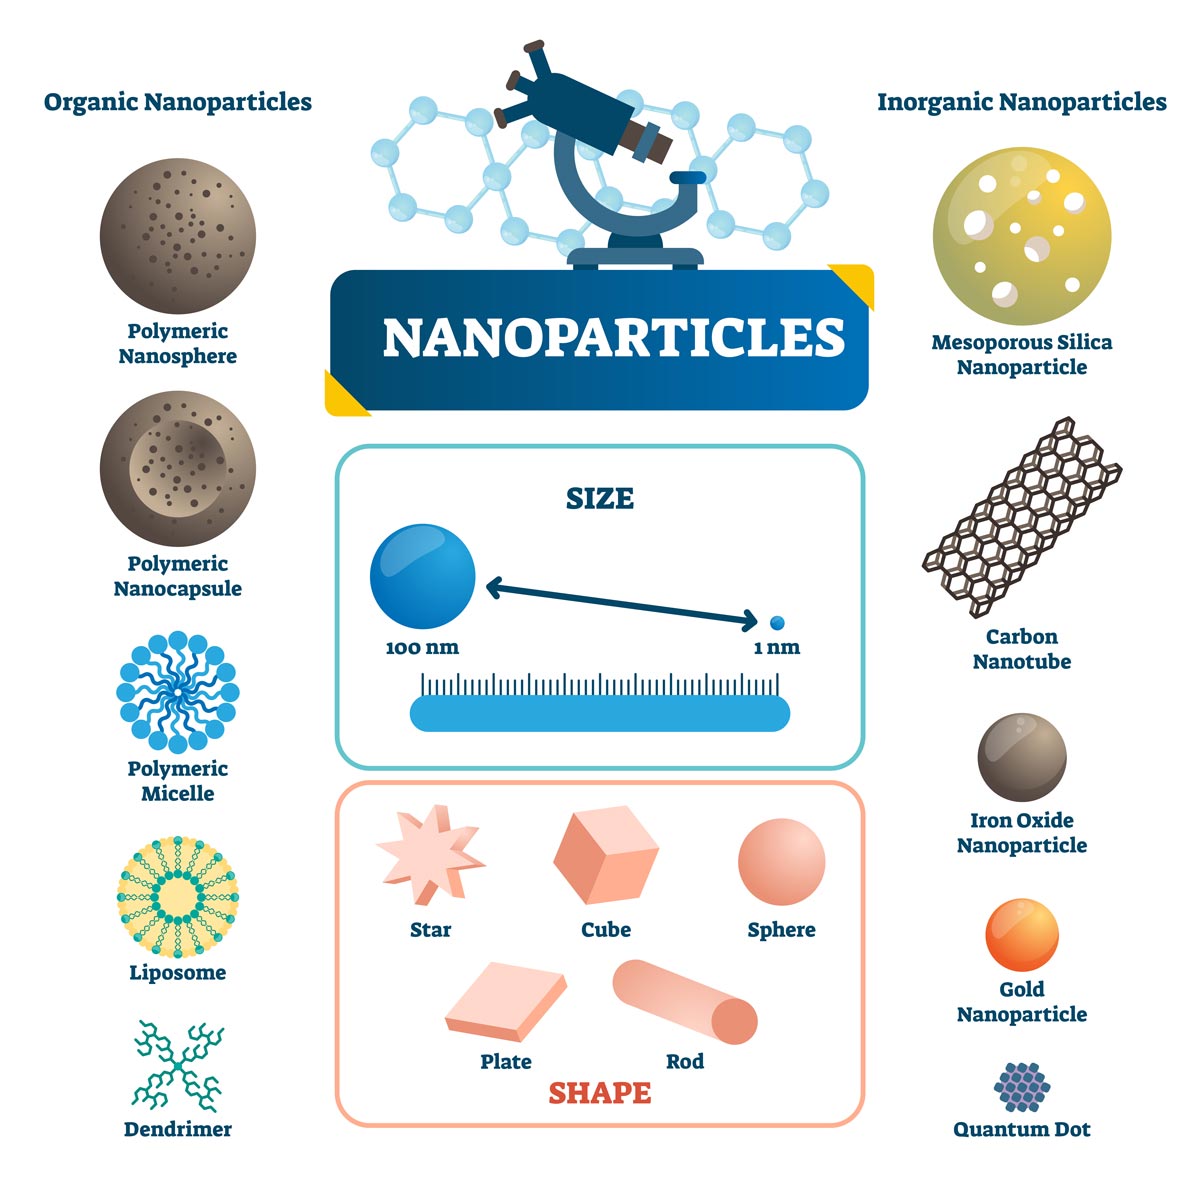 Organische und anorganische Nanopartikel mit Größe, Form und Materialien